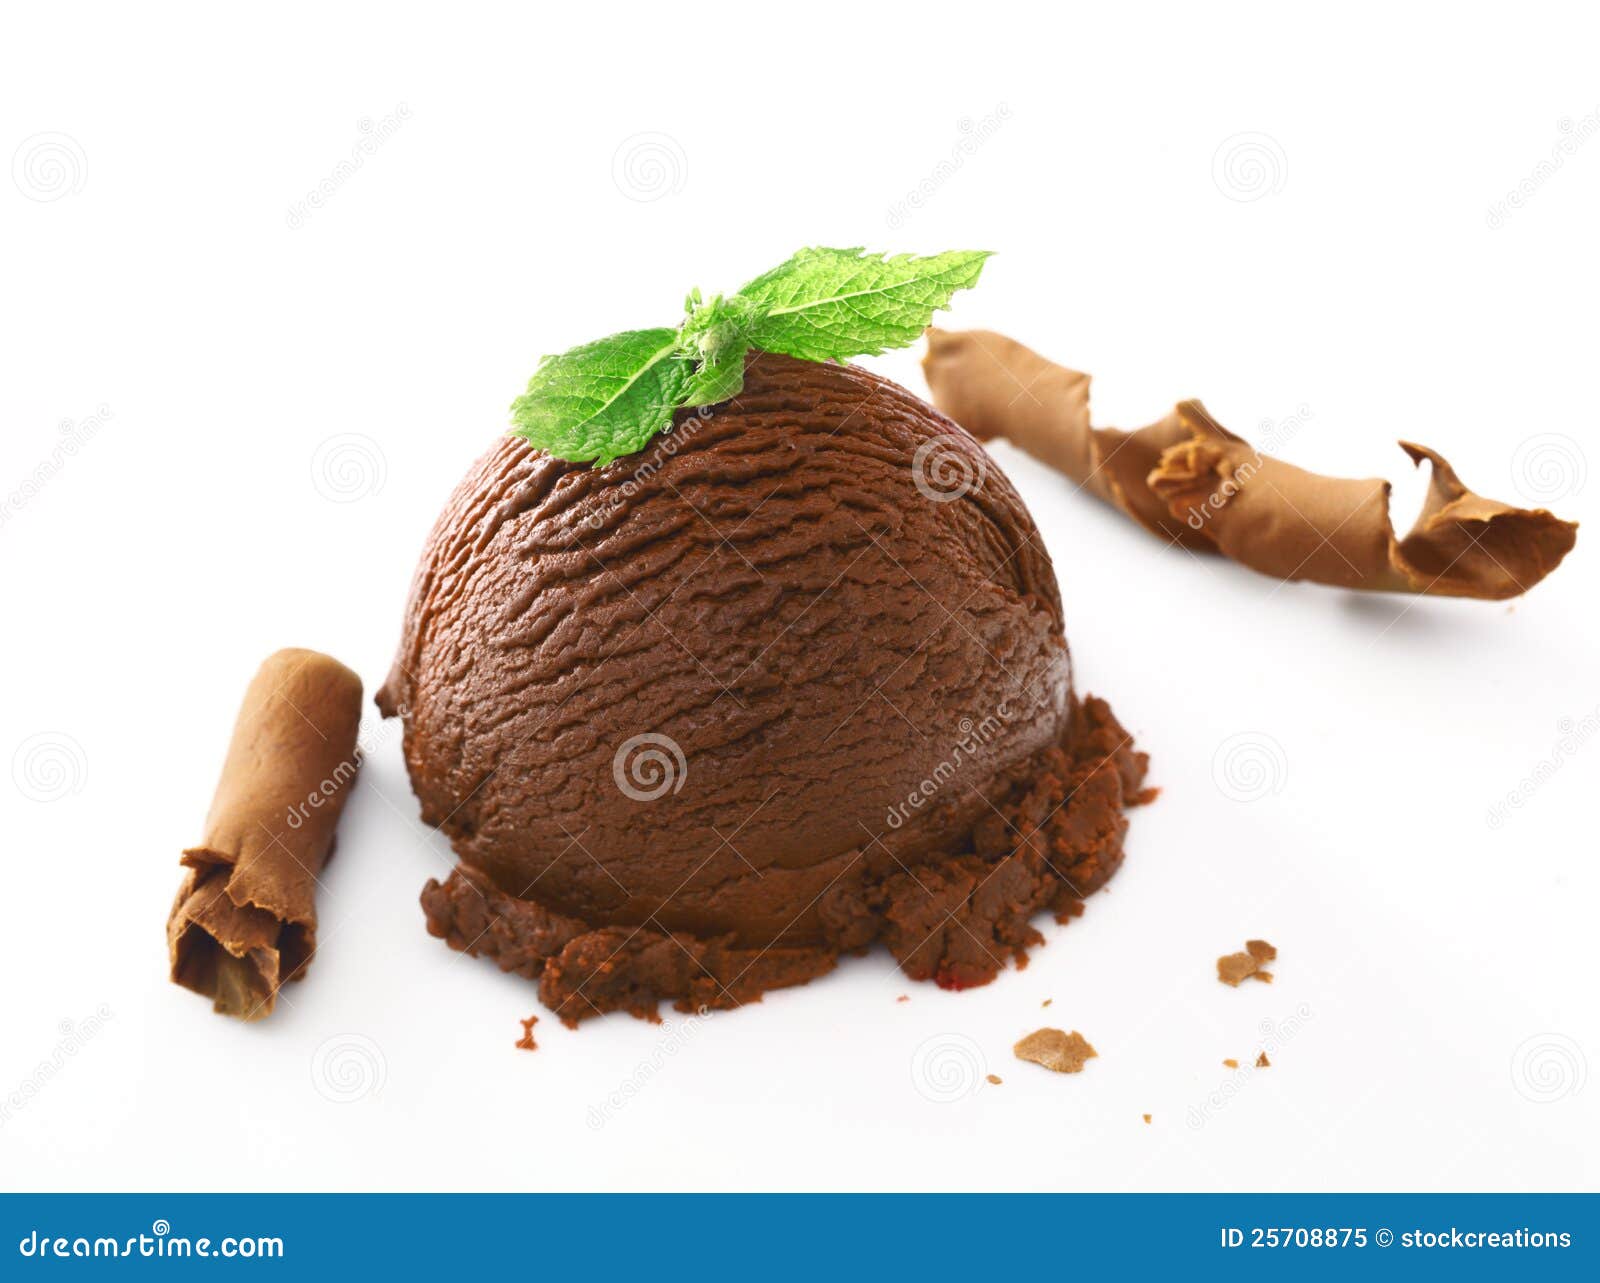 rich creamy chocolate icecream